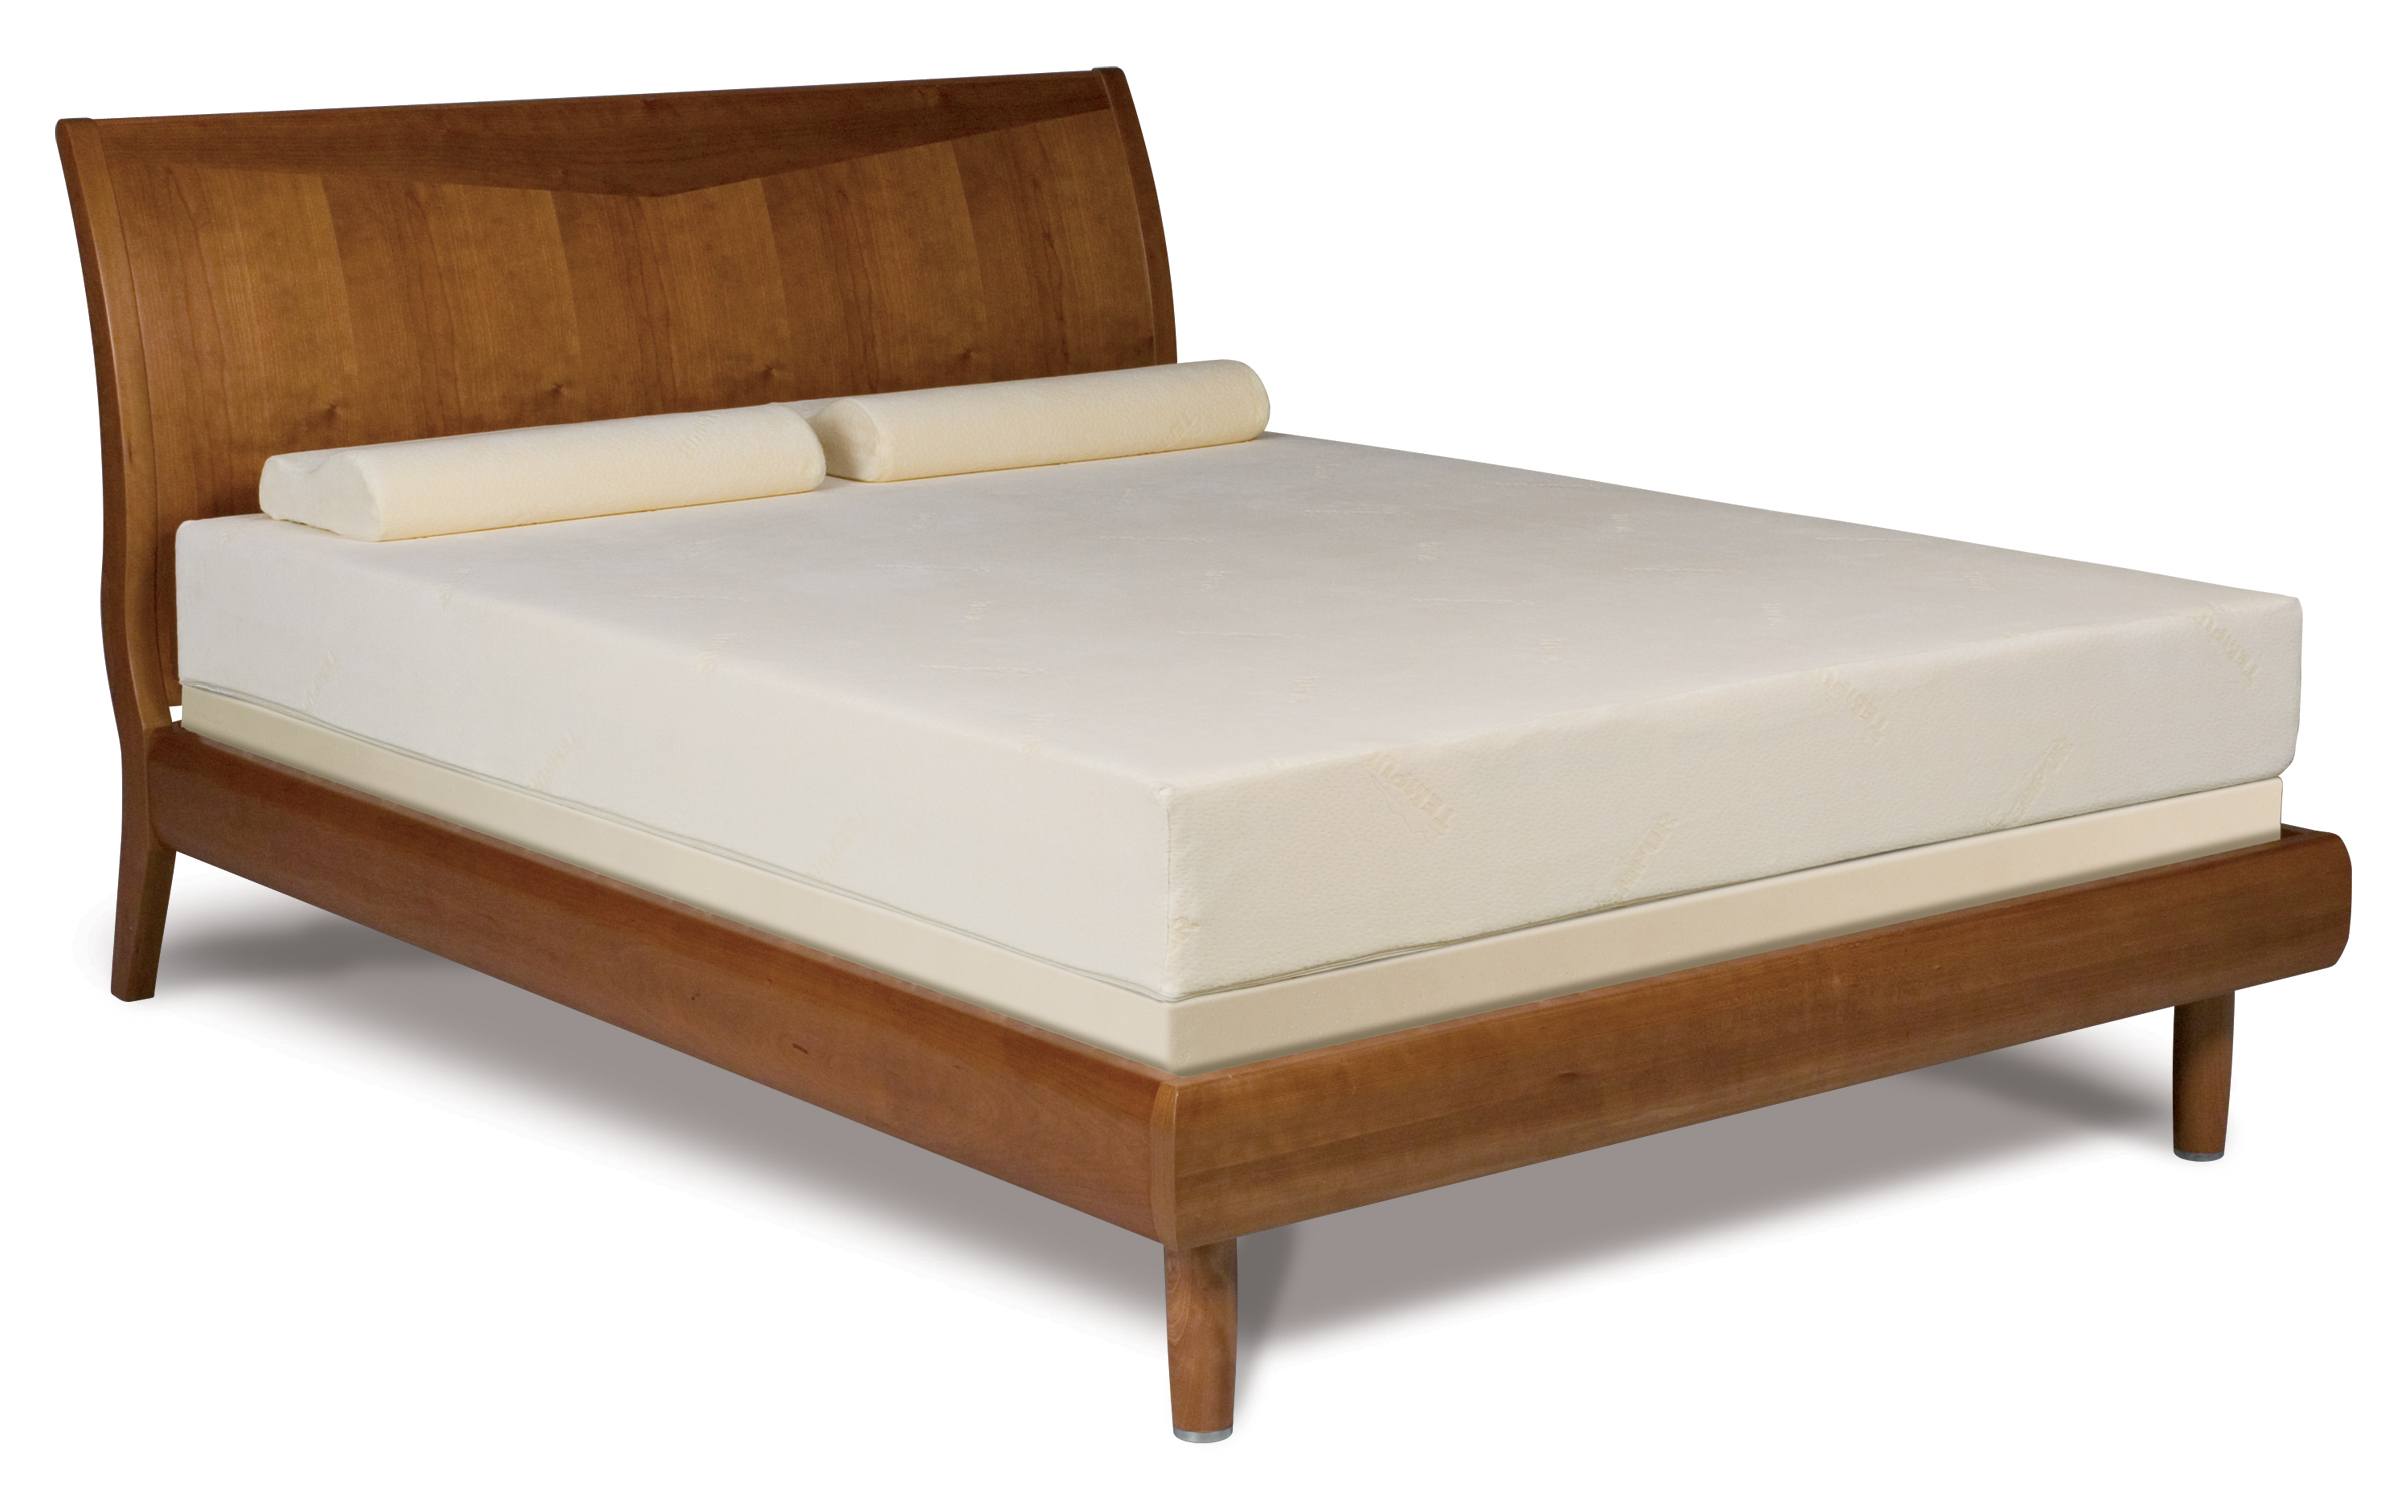 price of king size tempurpedic mattress